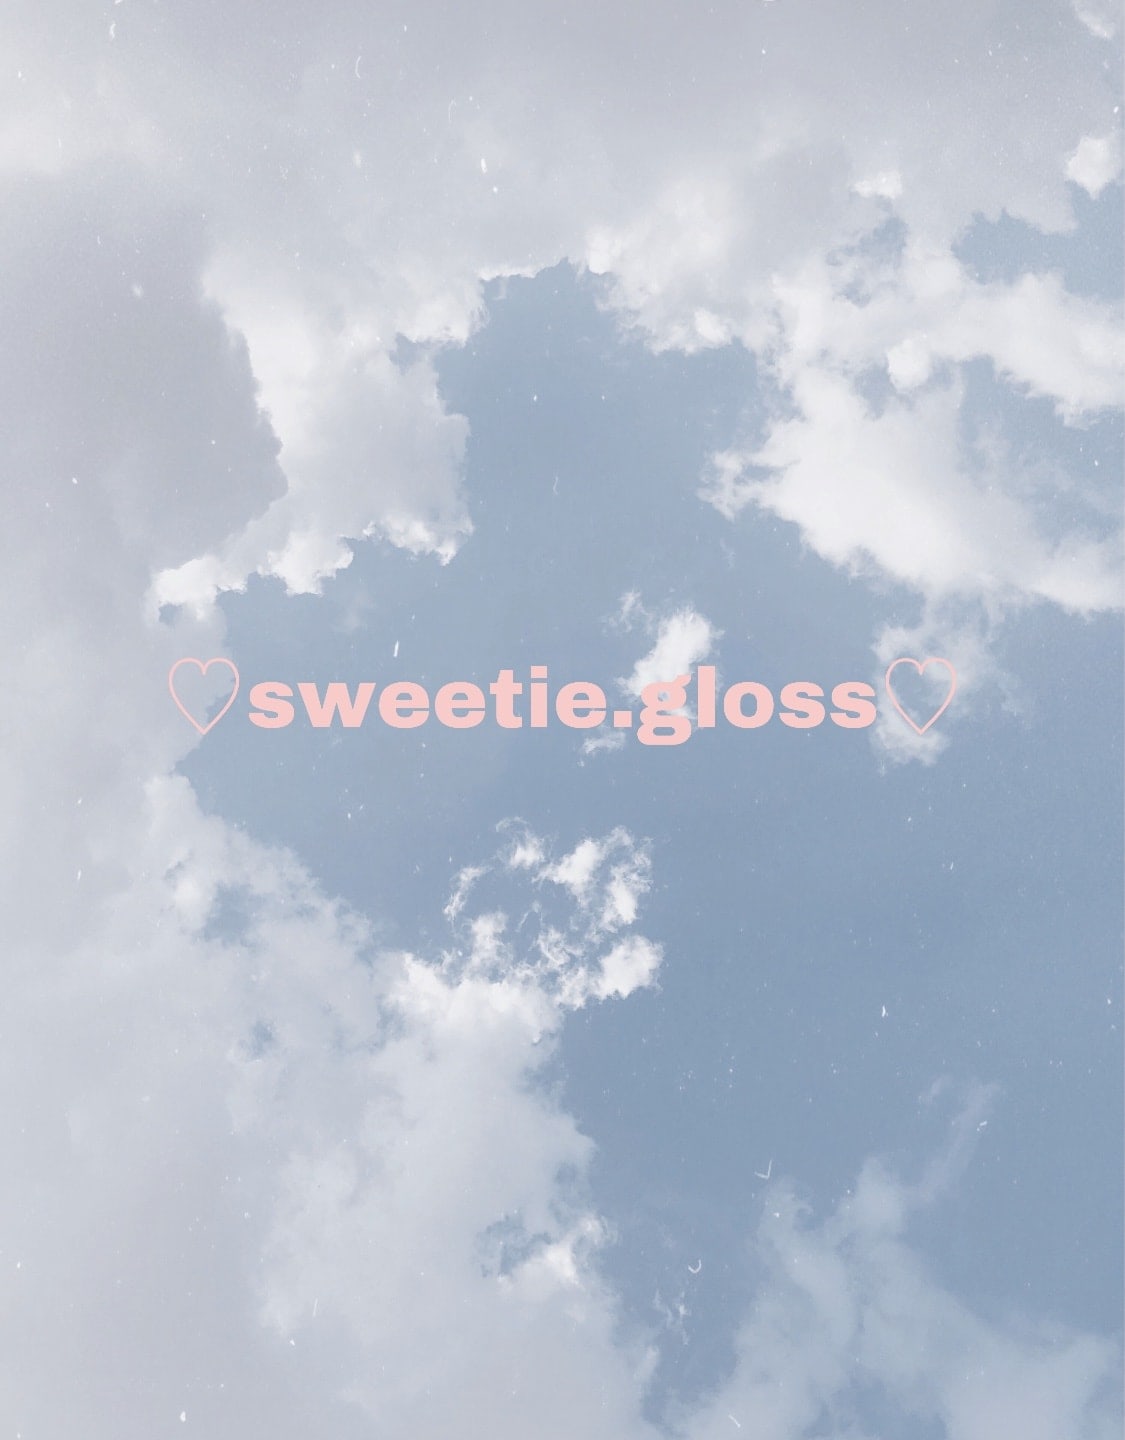 Sweetie.Gloss